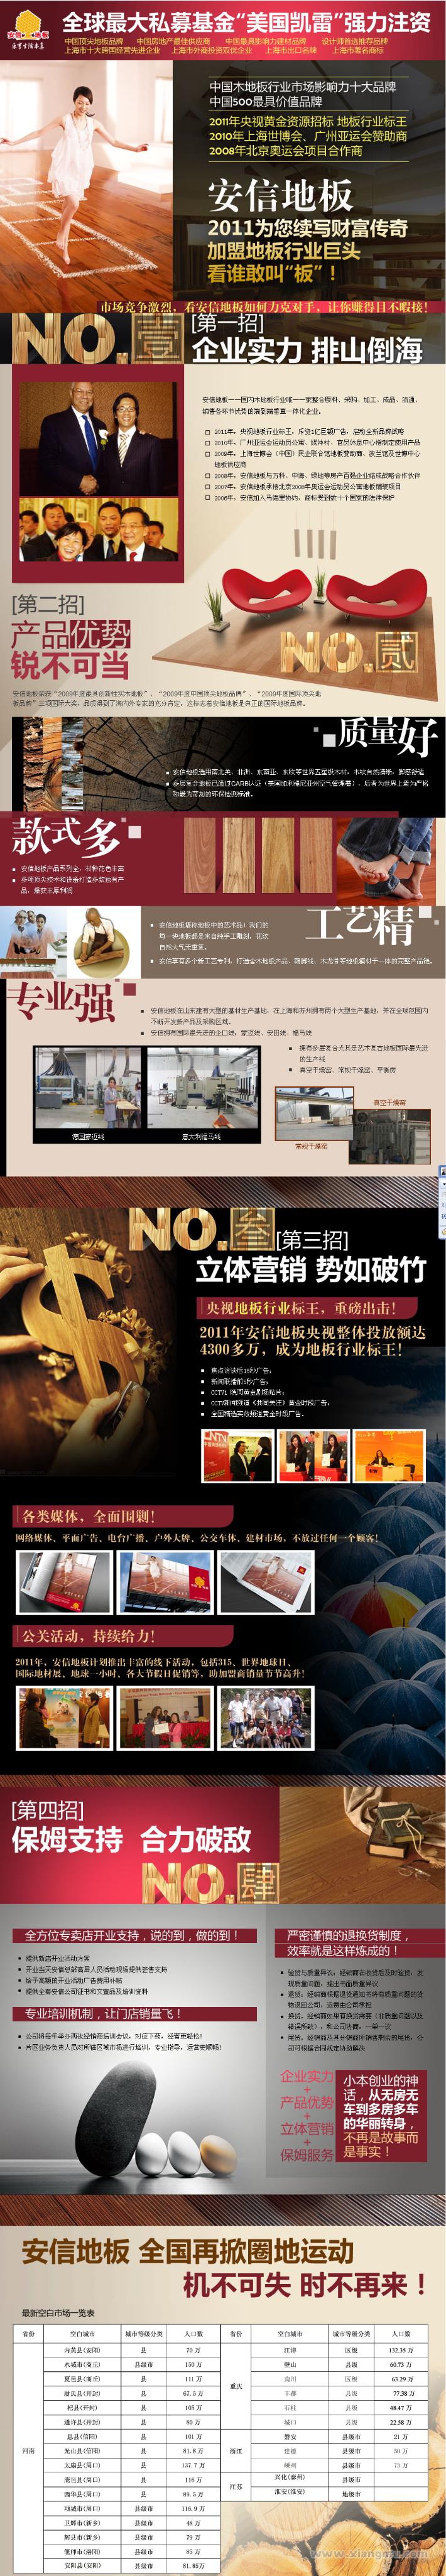 中国木地板行业市场影响力最大品牌——安信地板代理招商_1